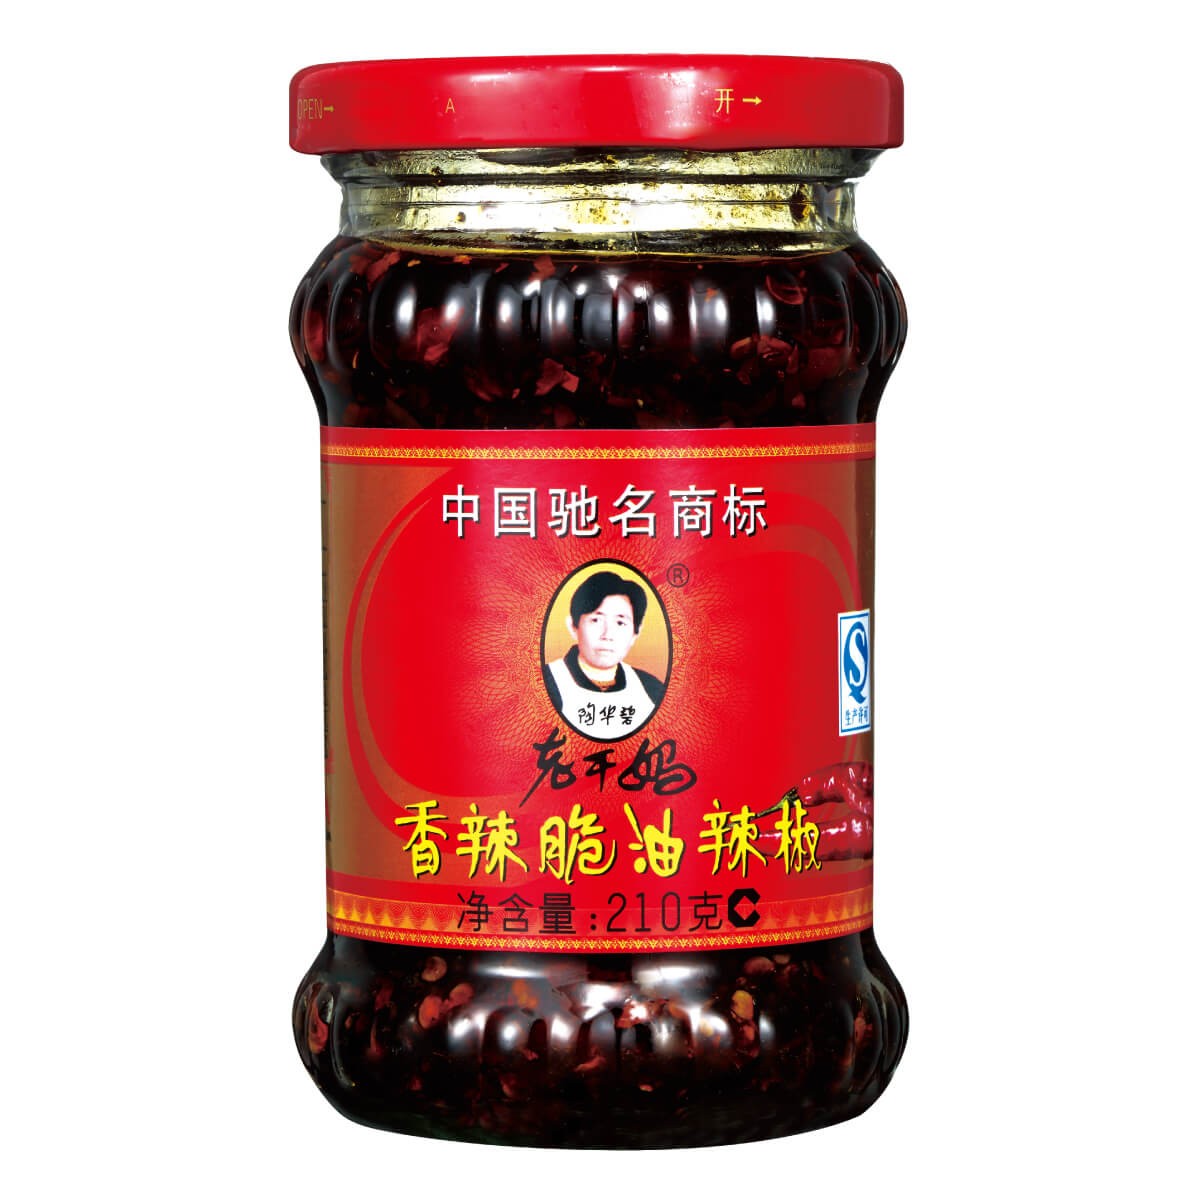 老干妈 油辣椒 | LGM Peanut Chili Oil Sauce 210g - HappyGo Asian Market